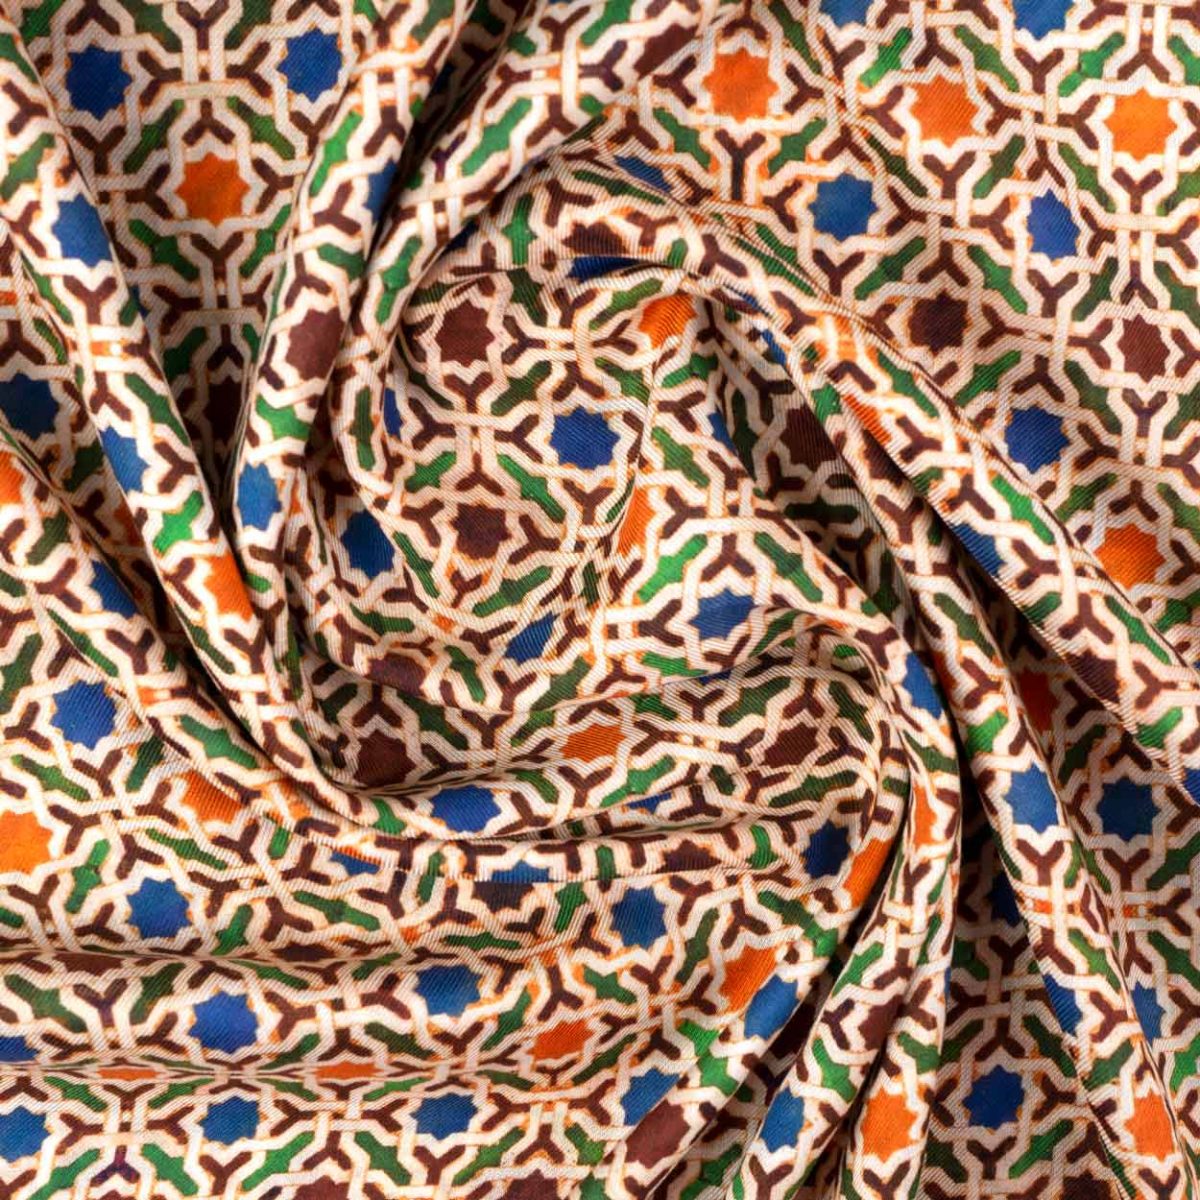 Detalle de pañuelo en tejido modal con estampado inspirado en los azulejos de marruecos